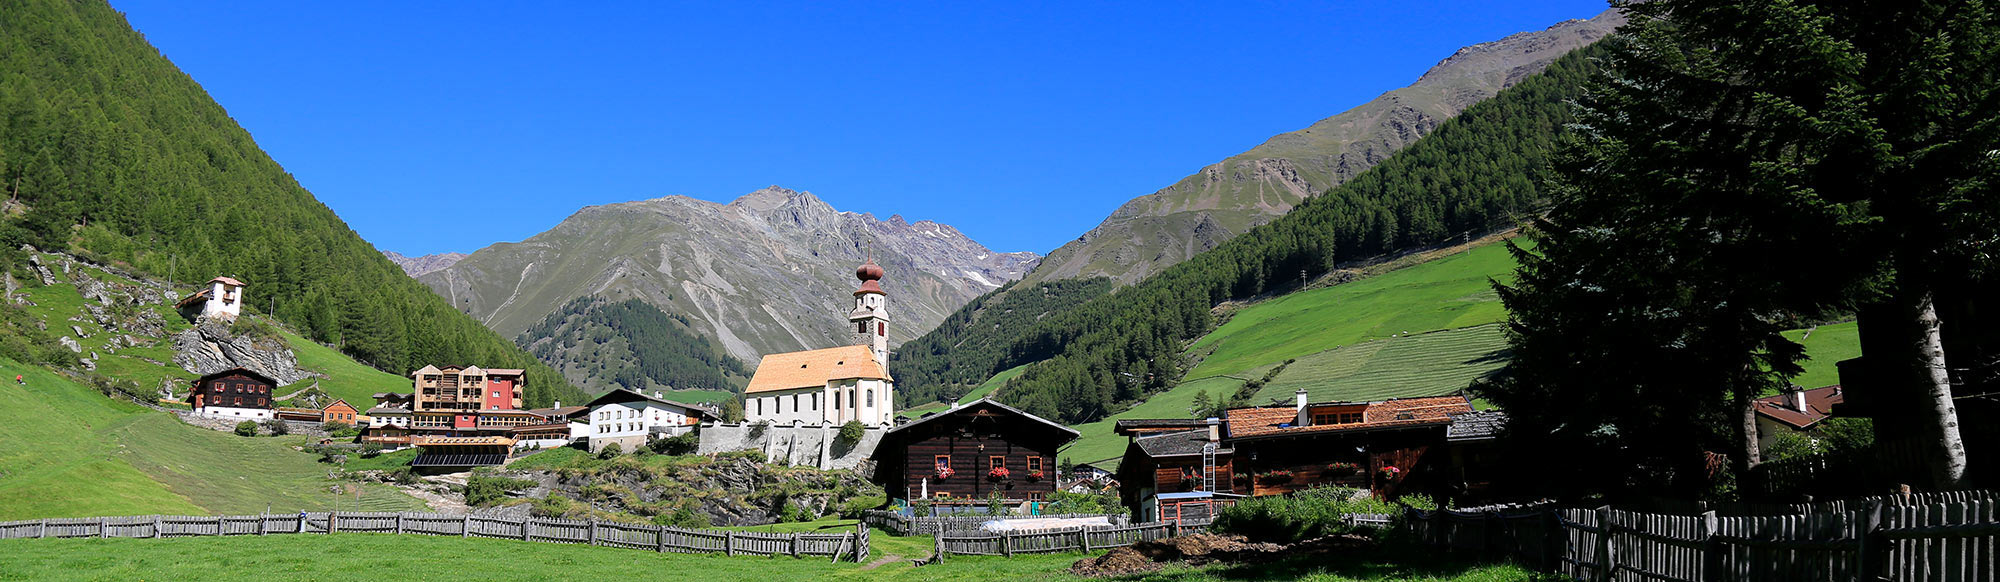 Anderleithof im Schnalstal in Südtirol